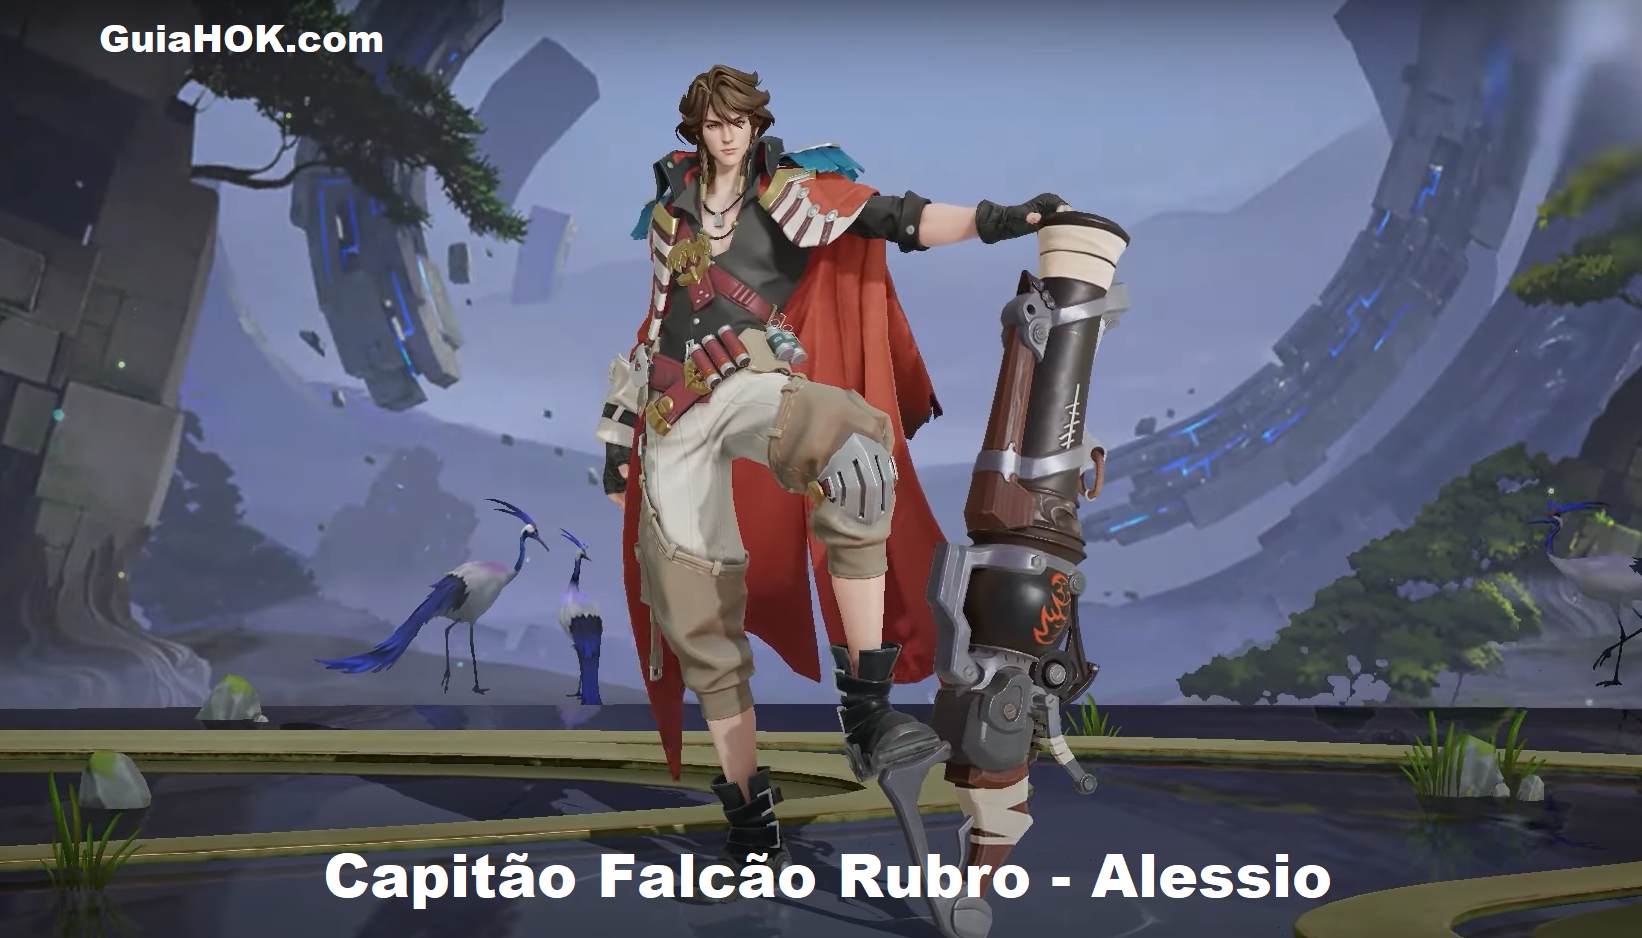 Alessio (Capitão Falcão Rubro)